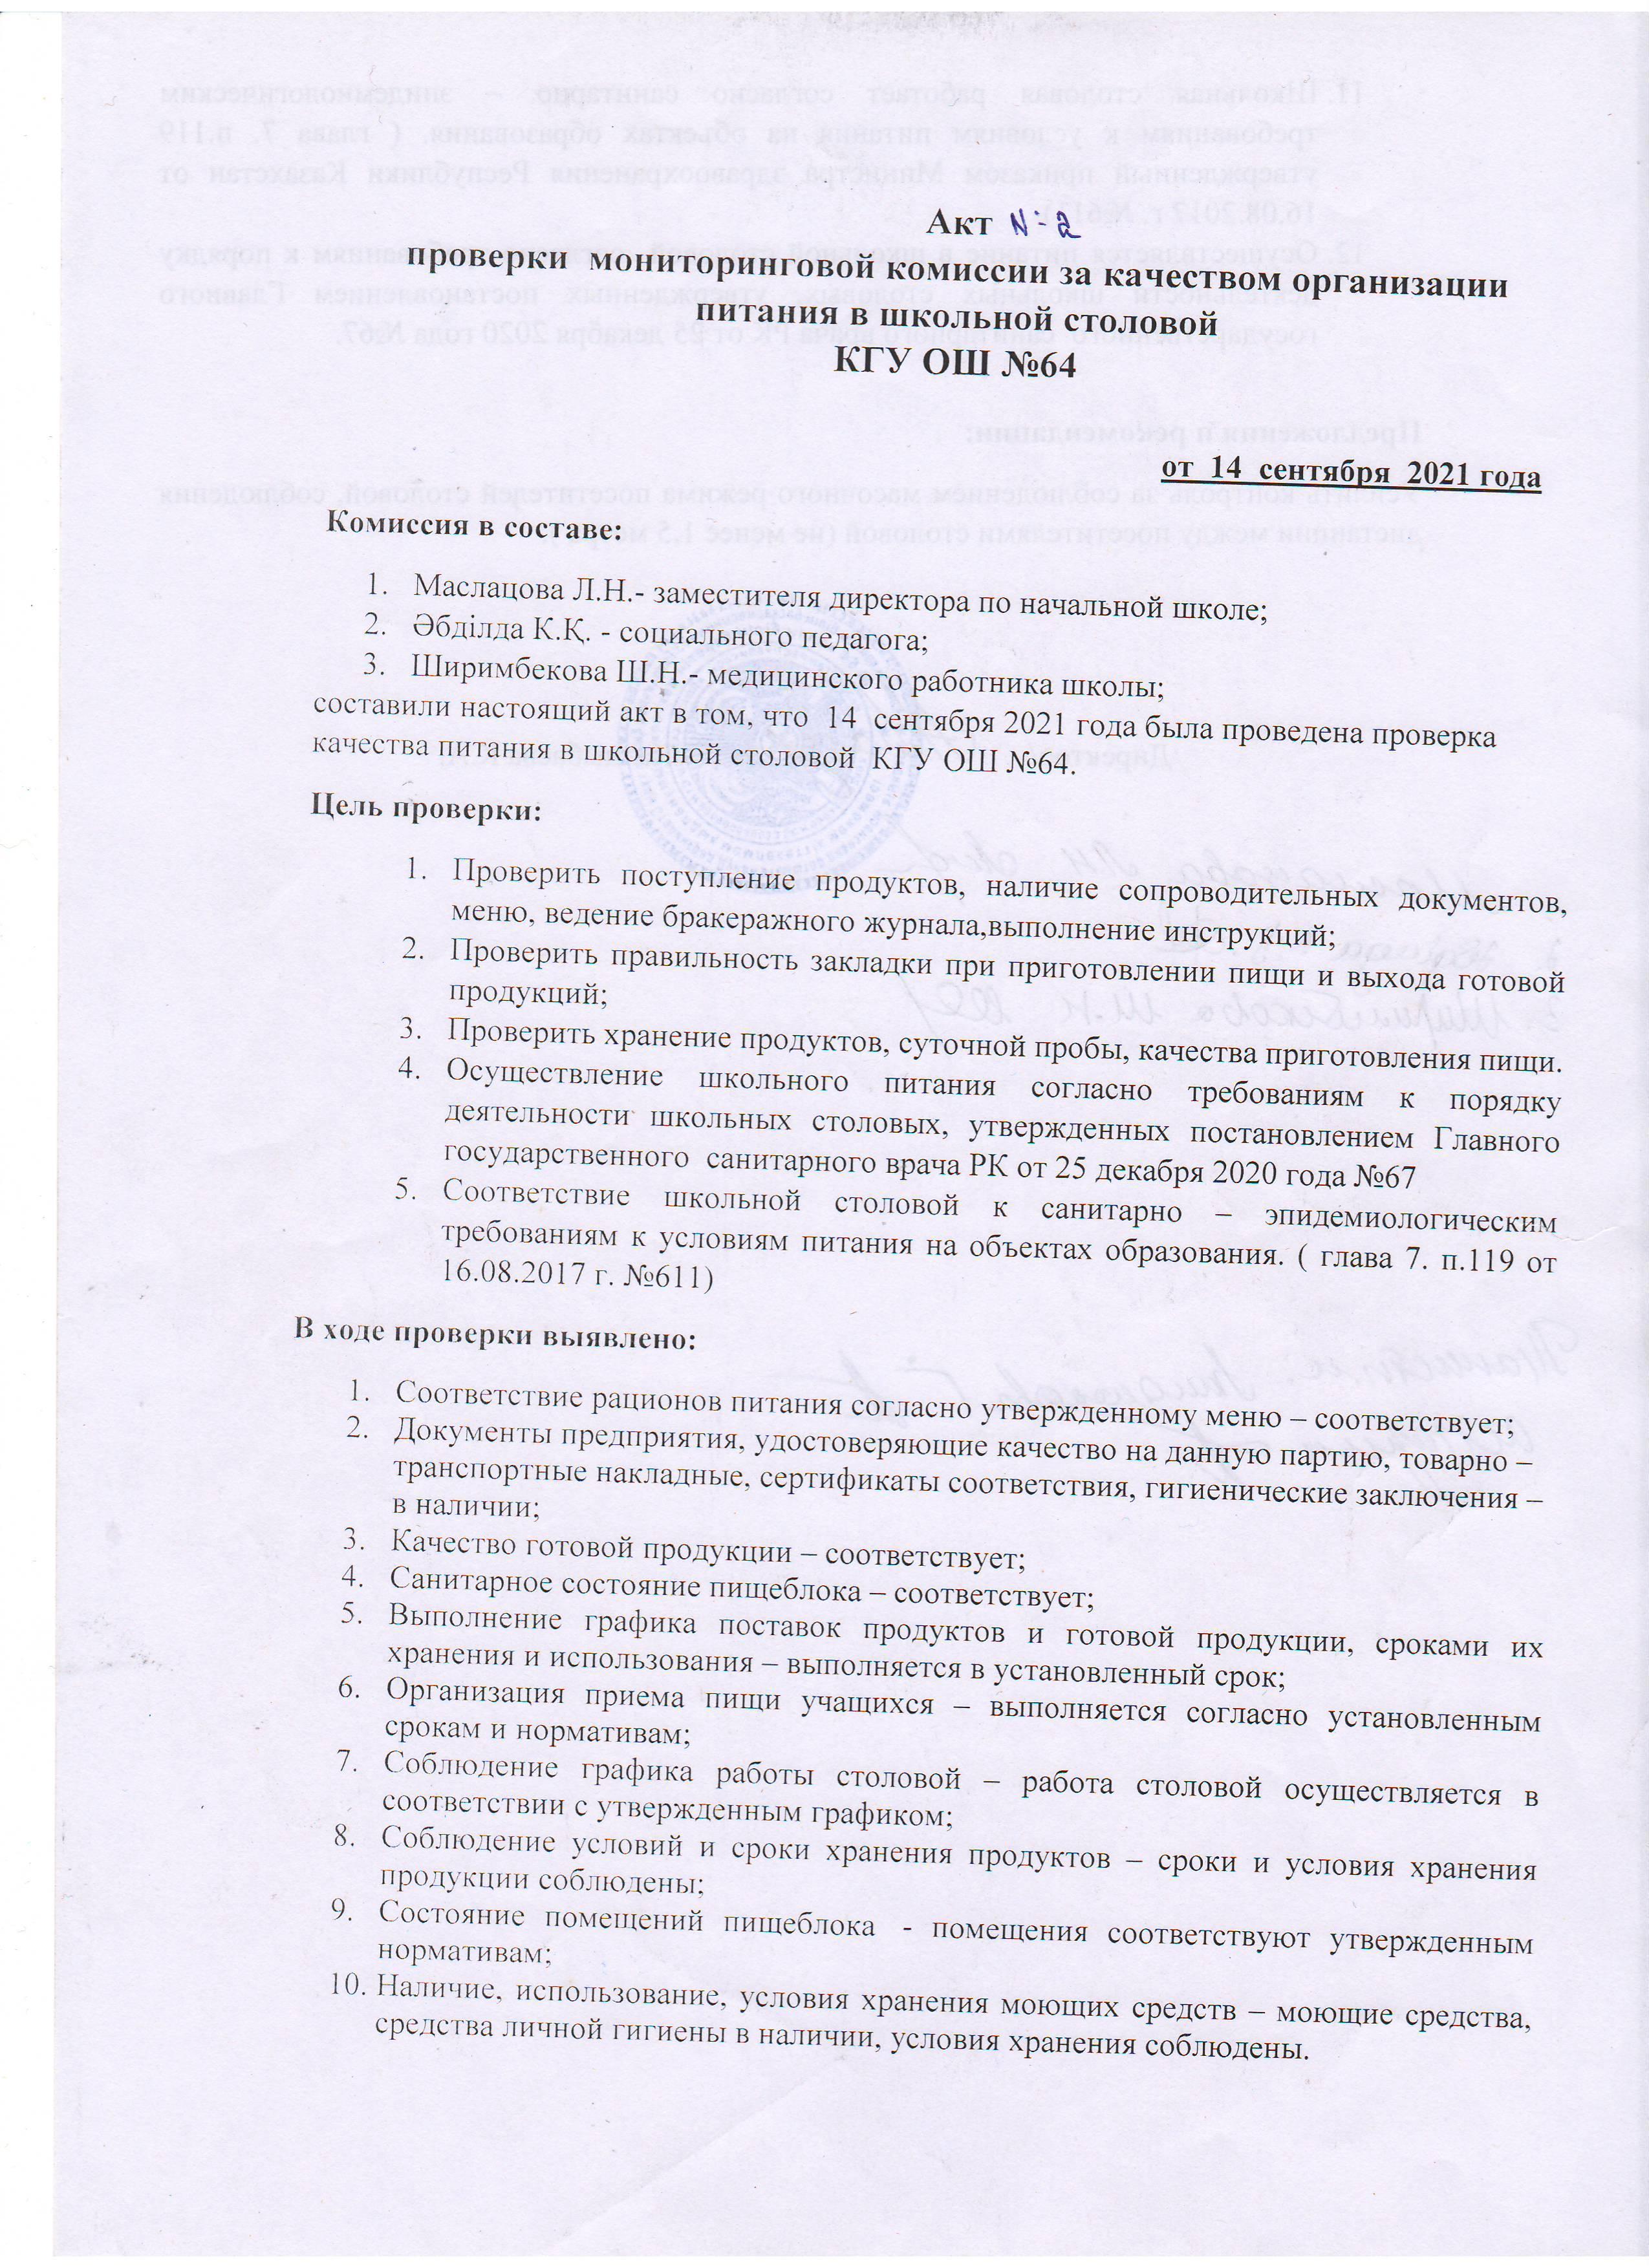 АКТ №2 проверки школьной столовой комиссии по мониторингу (бракеражной)